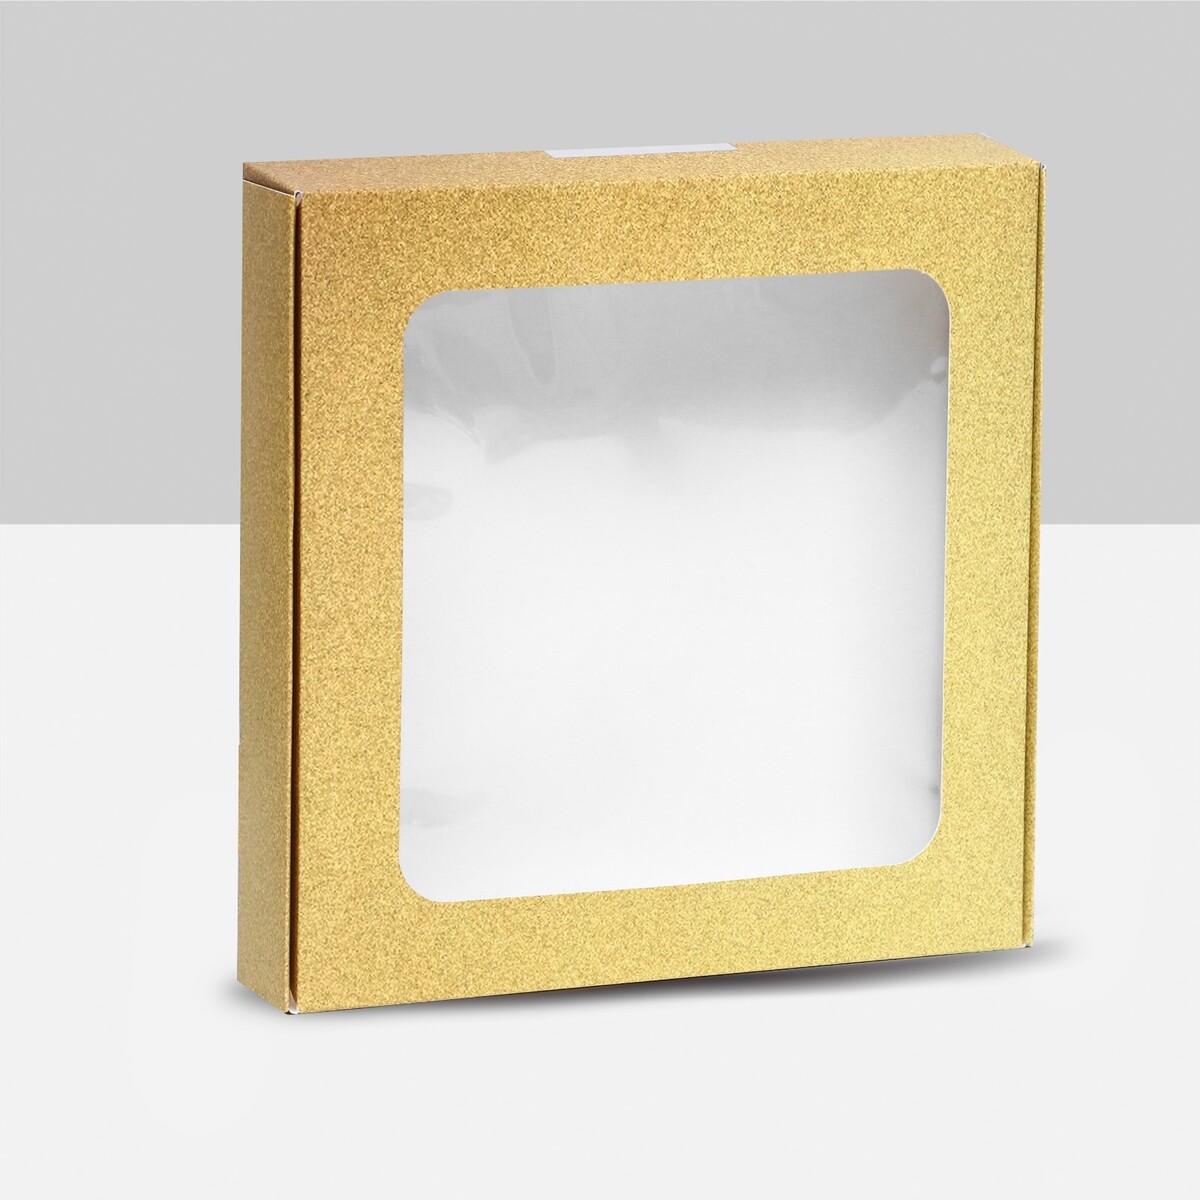 Коробка самосборная, с окном, золотая, 16 х 16 х 3 см коробка самосборная с окном розовая 16 х 16 х 3 см